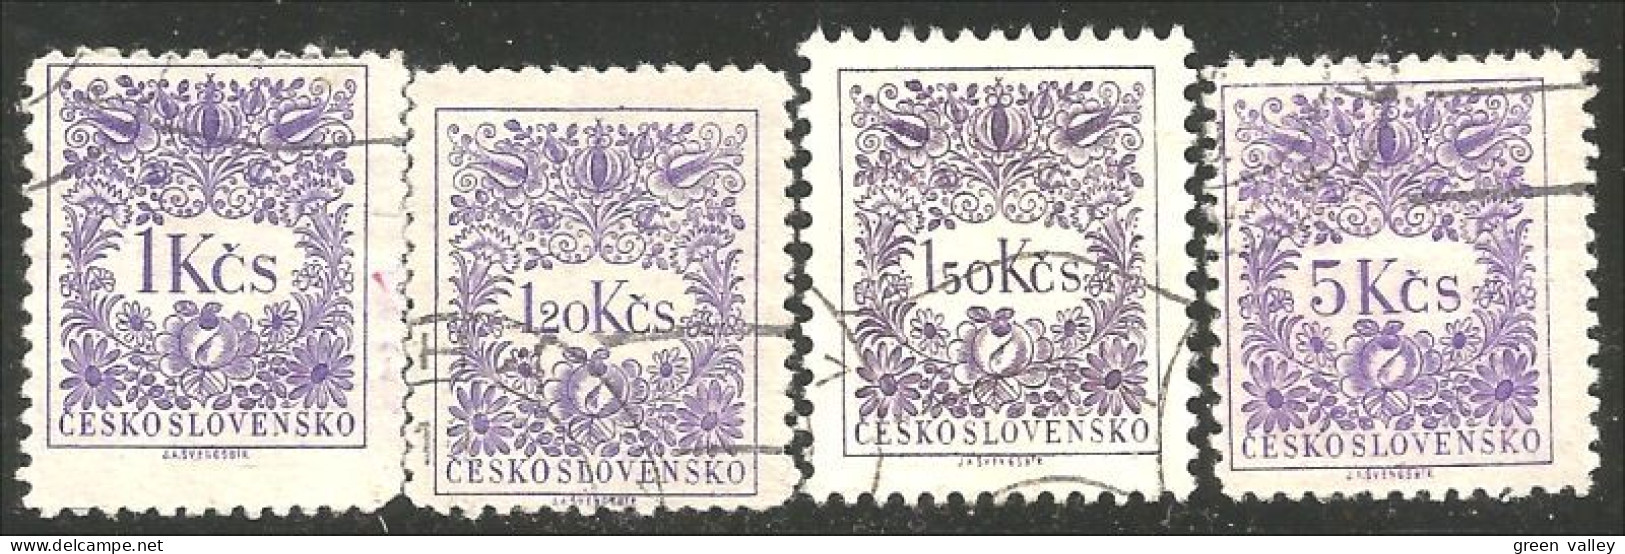 290 Czechoslovakia 1954 Tax Violet Stamps (CZE-245b) - Postage Due